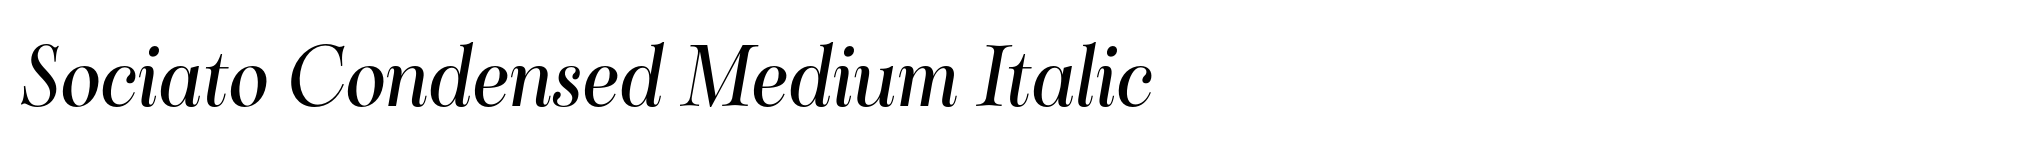 Sociato Condensed Medium Italic image